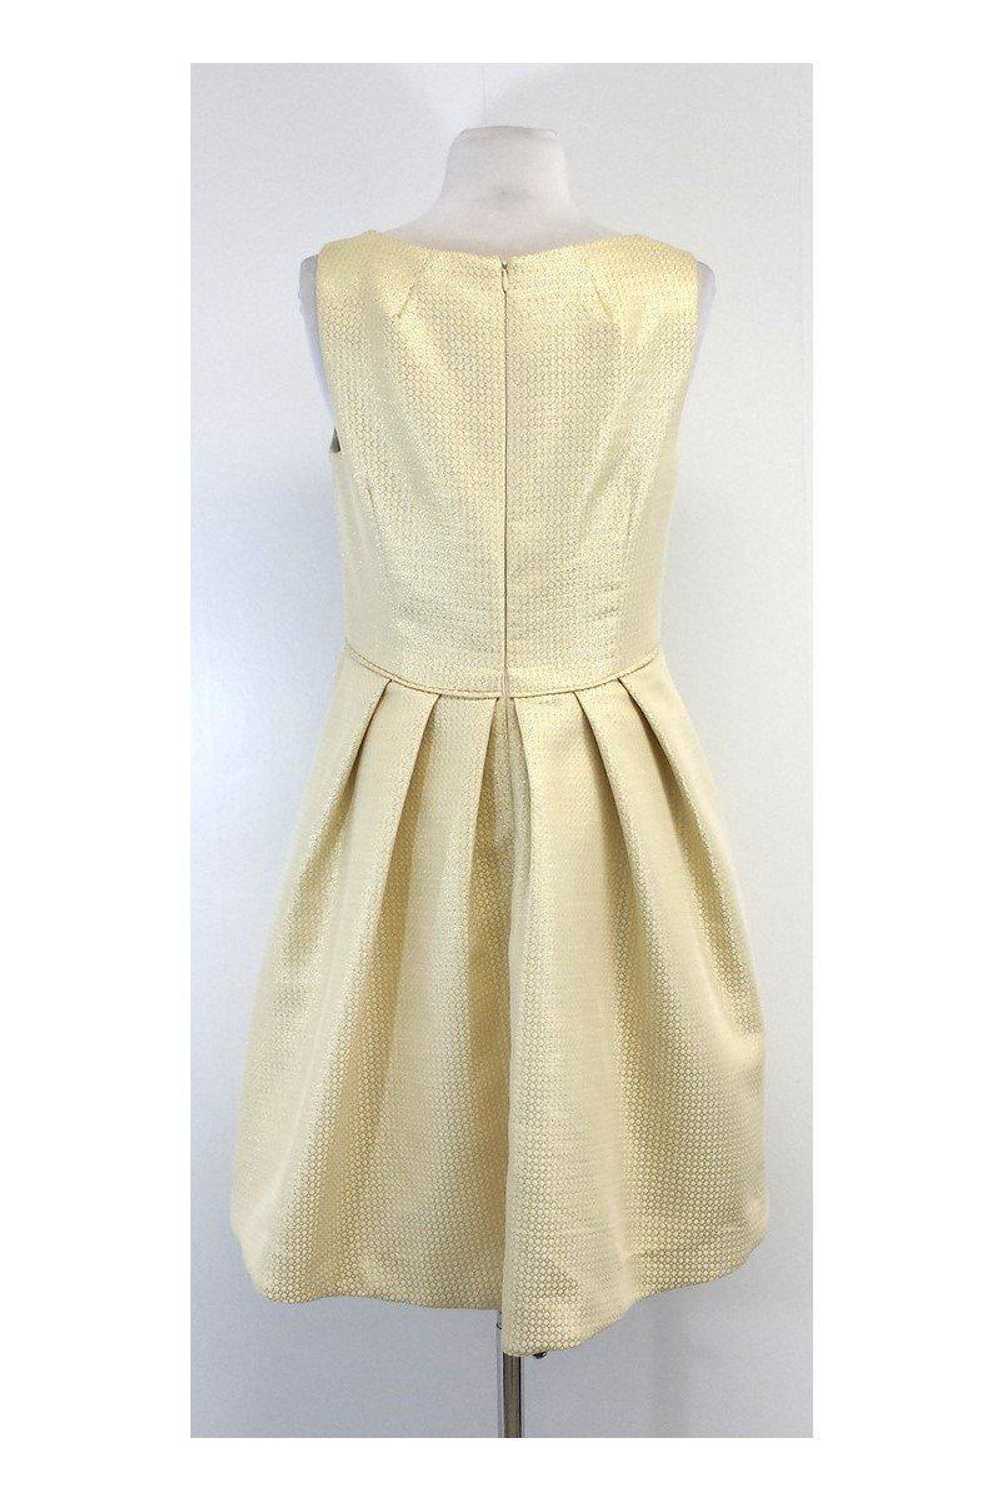 Shoshanna - Gold Textured Sleeveless Pleated Dres… - image 3